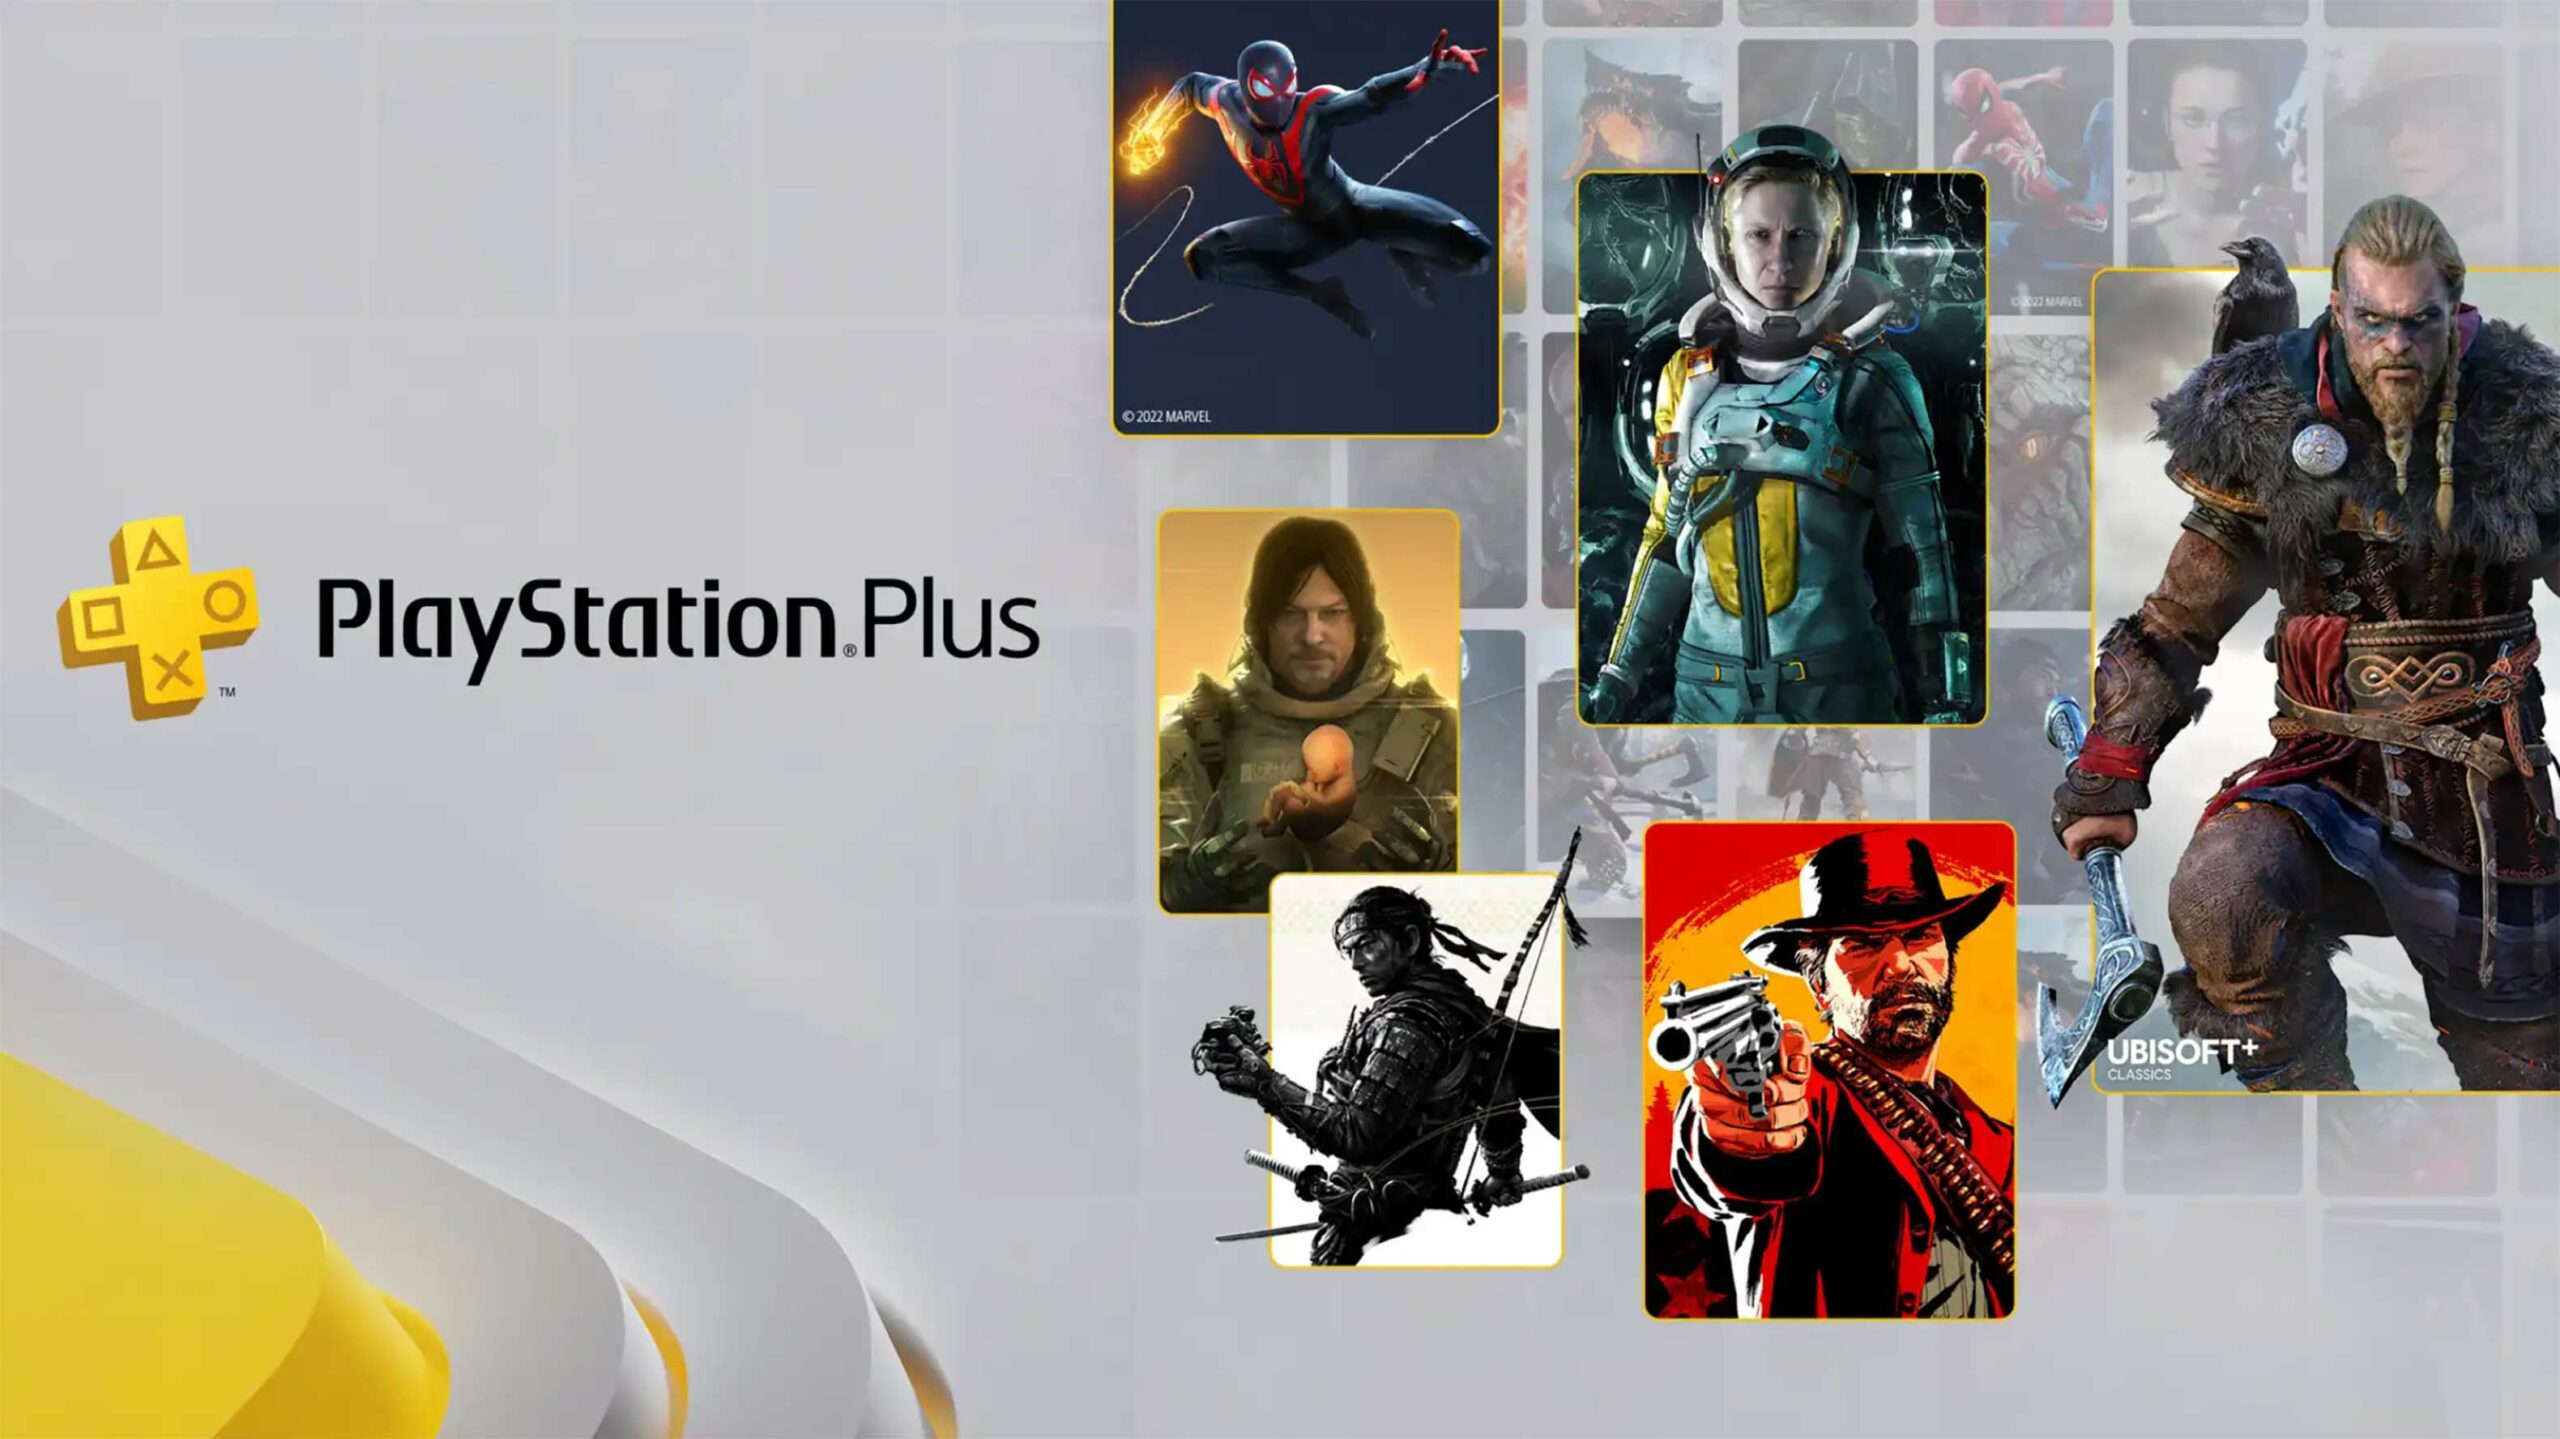 Sony finalmente presenta el primer lote de nuevos juegos de PlayStation Plus, incluidos los clásicos de PS1